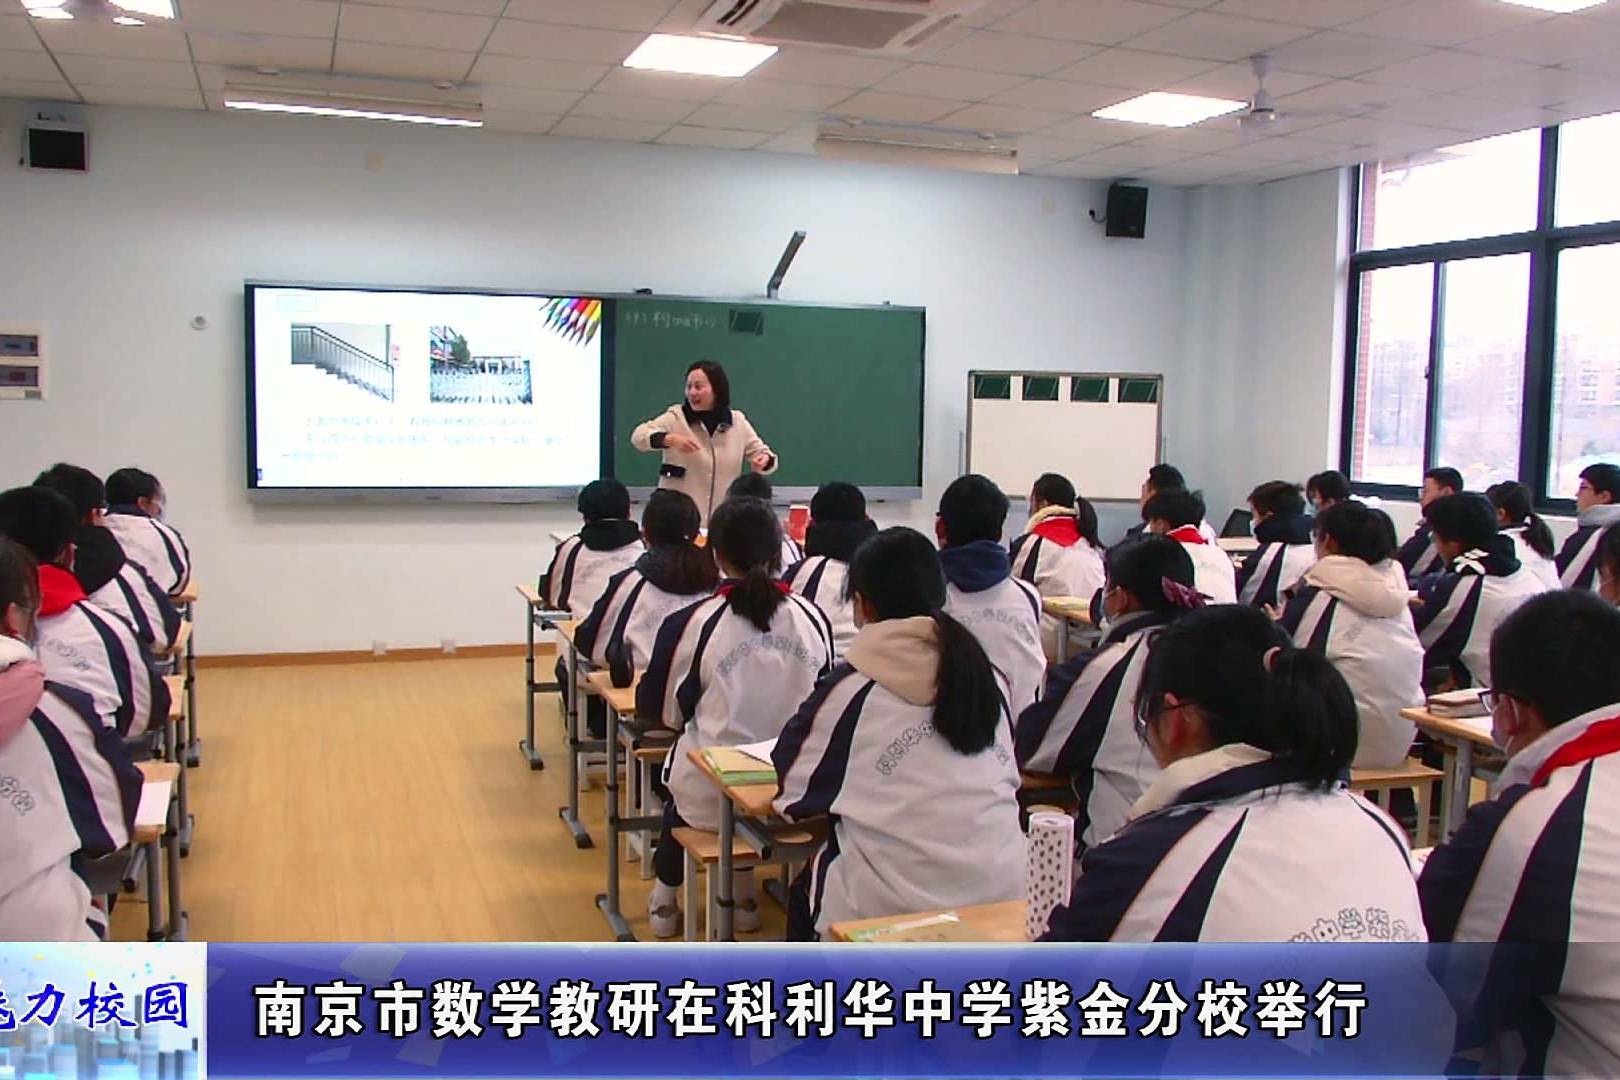 南京市科利华中学紫金分校在市级教研活动中感受思维的进阶